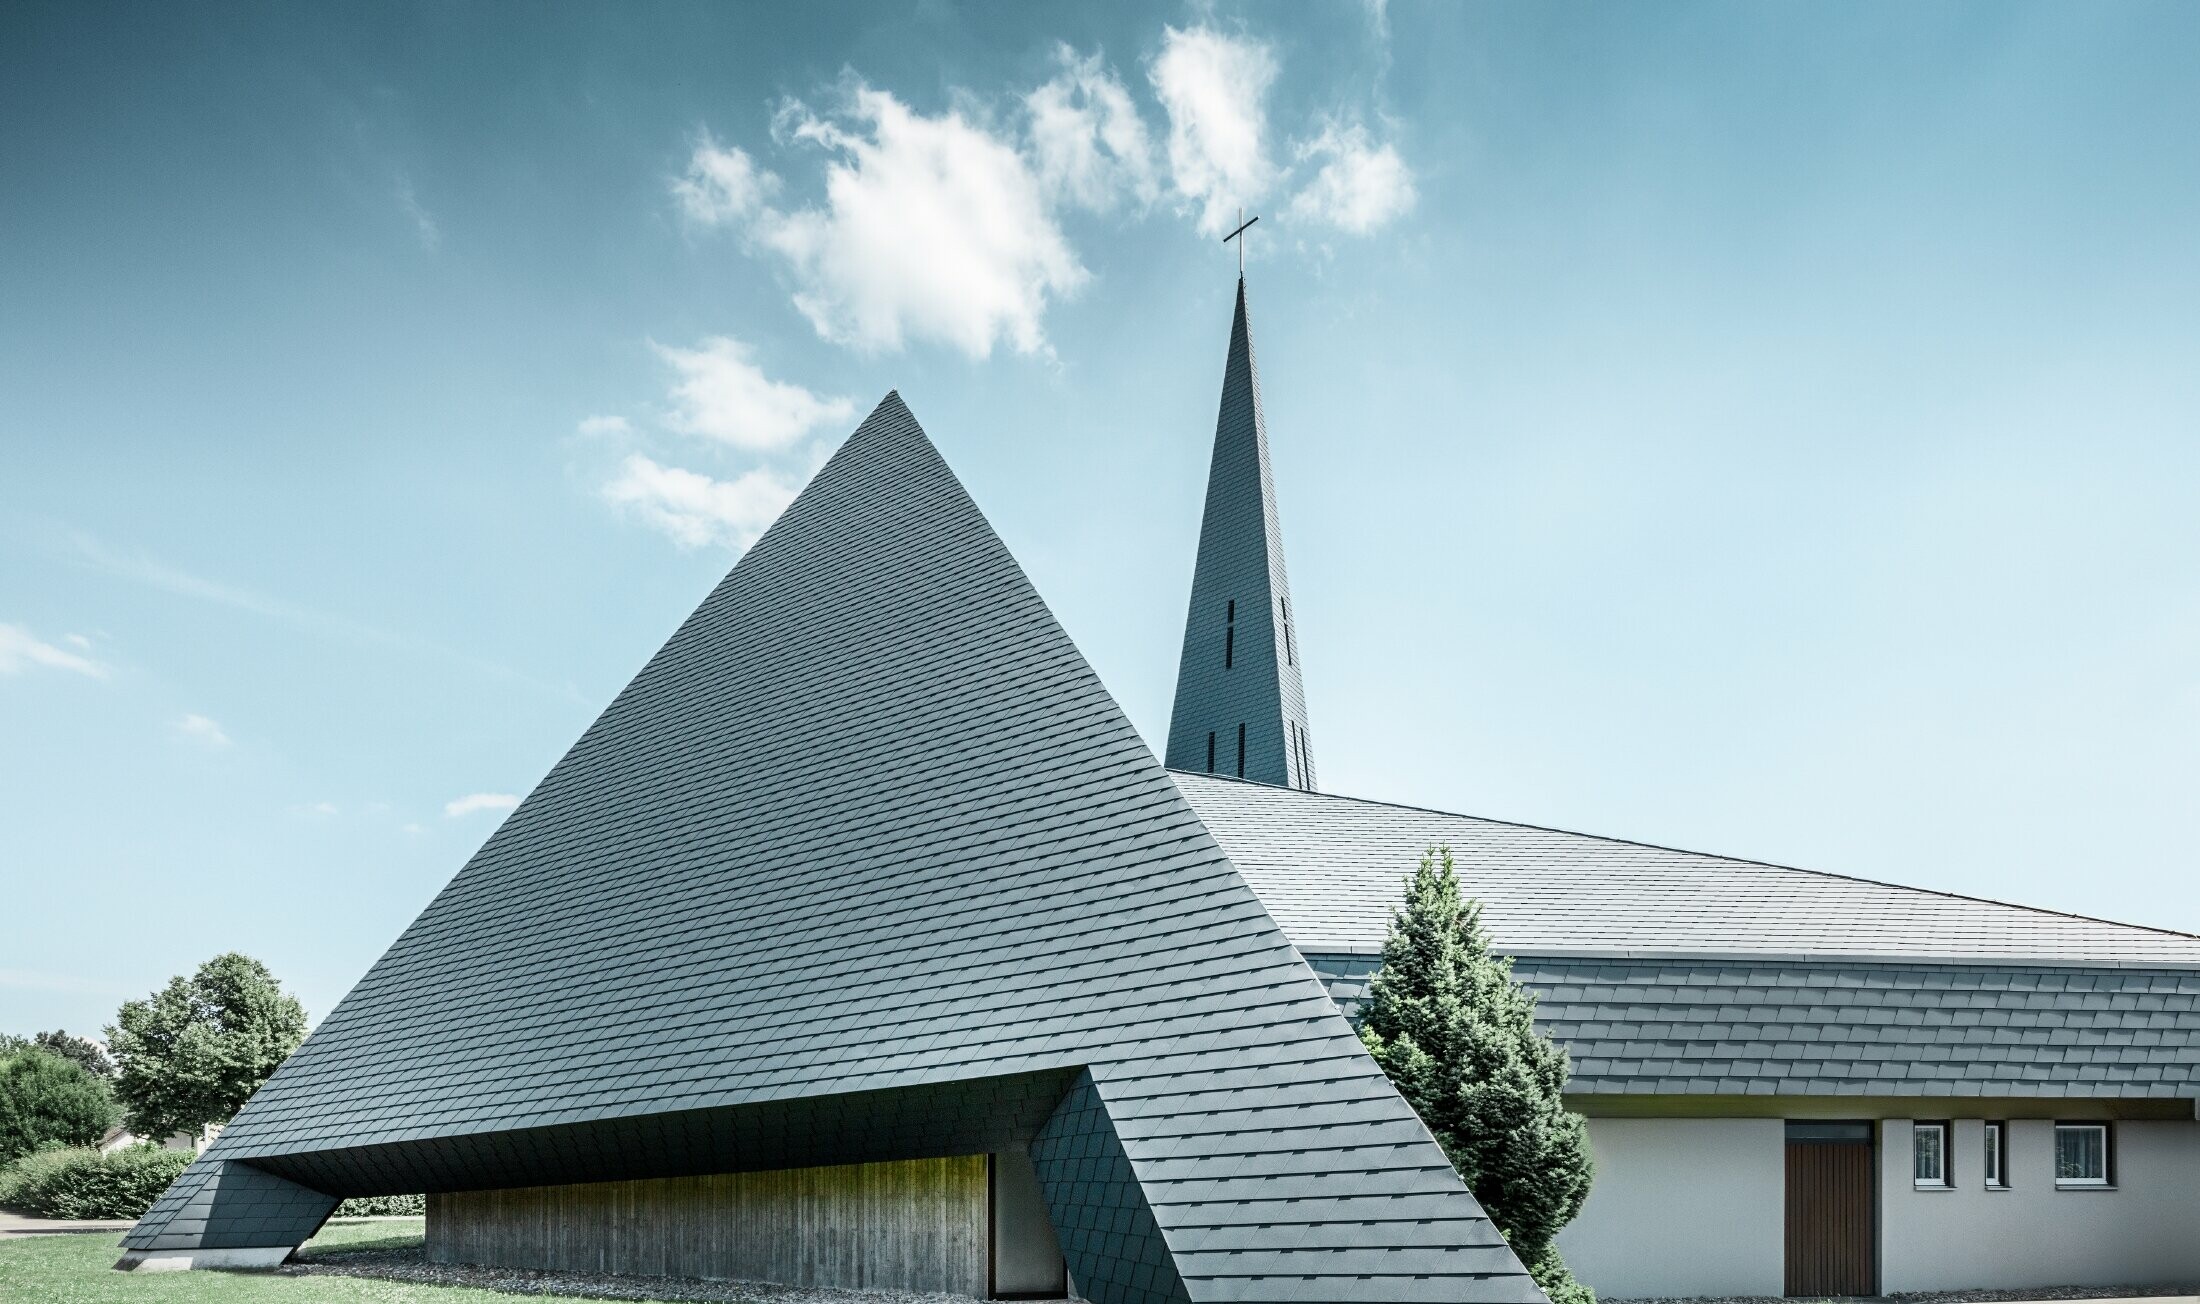 katolsk kyrka i Langenau med en pyramidlik design täckt med aluminiumshingel från PREFA i antracitgrått